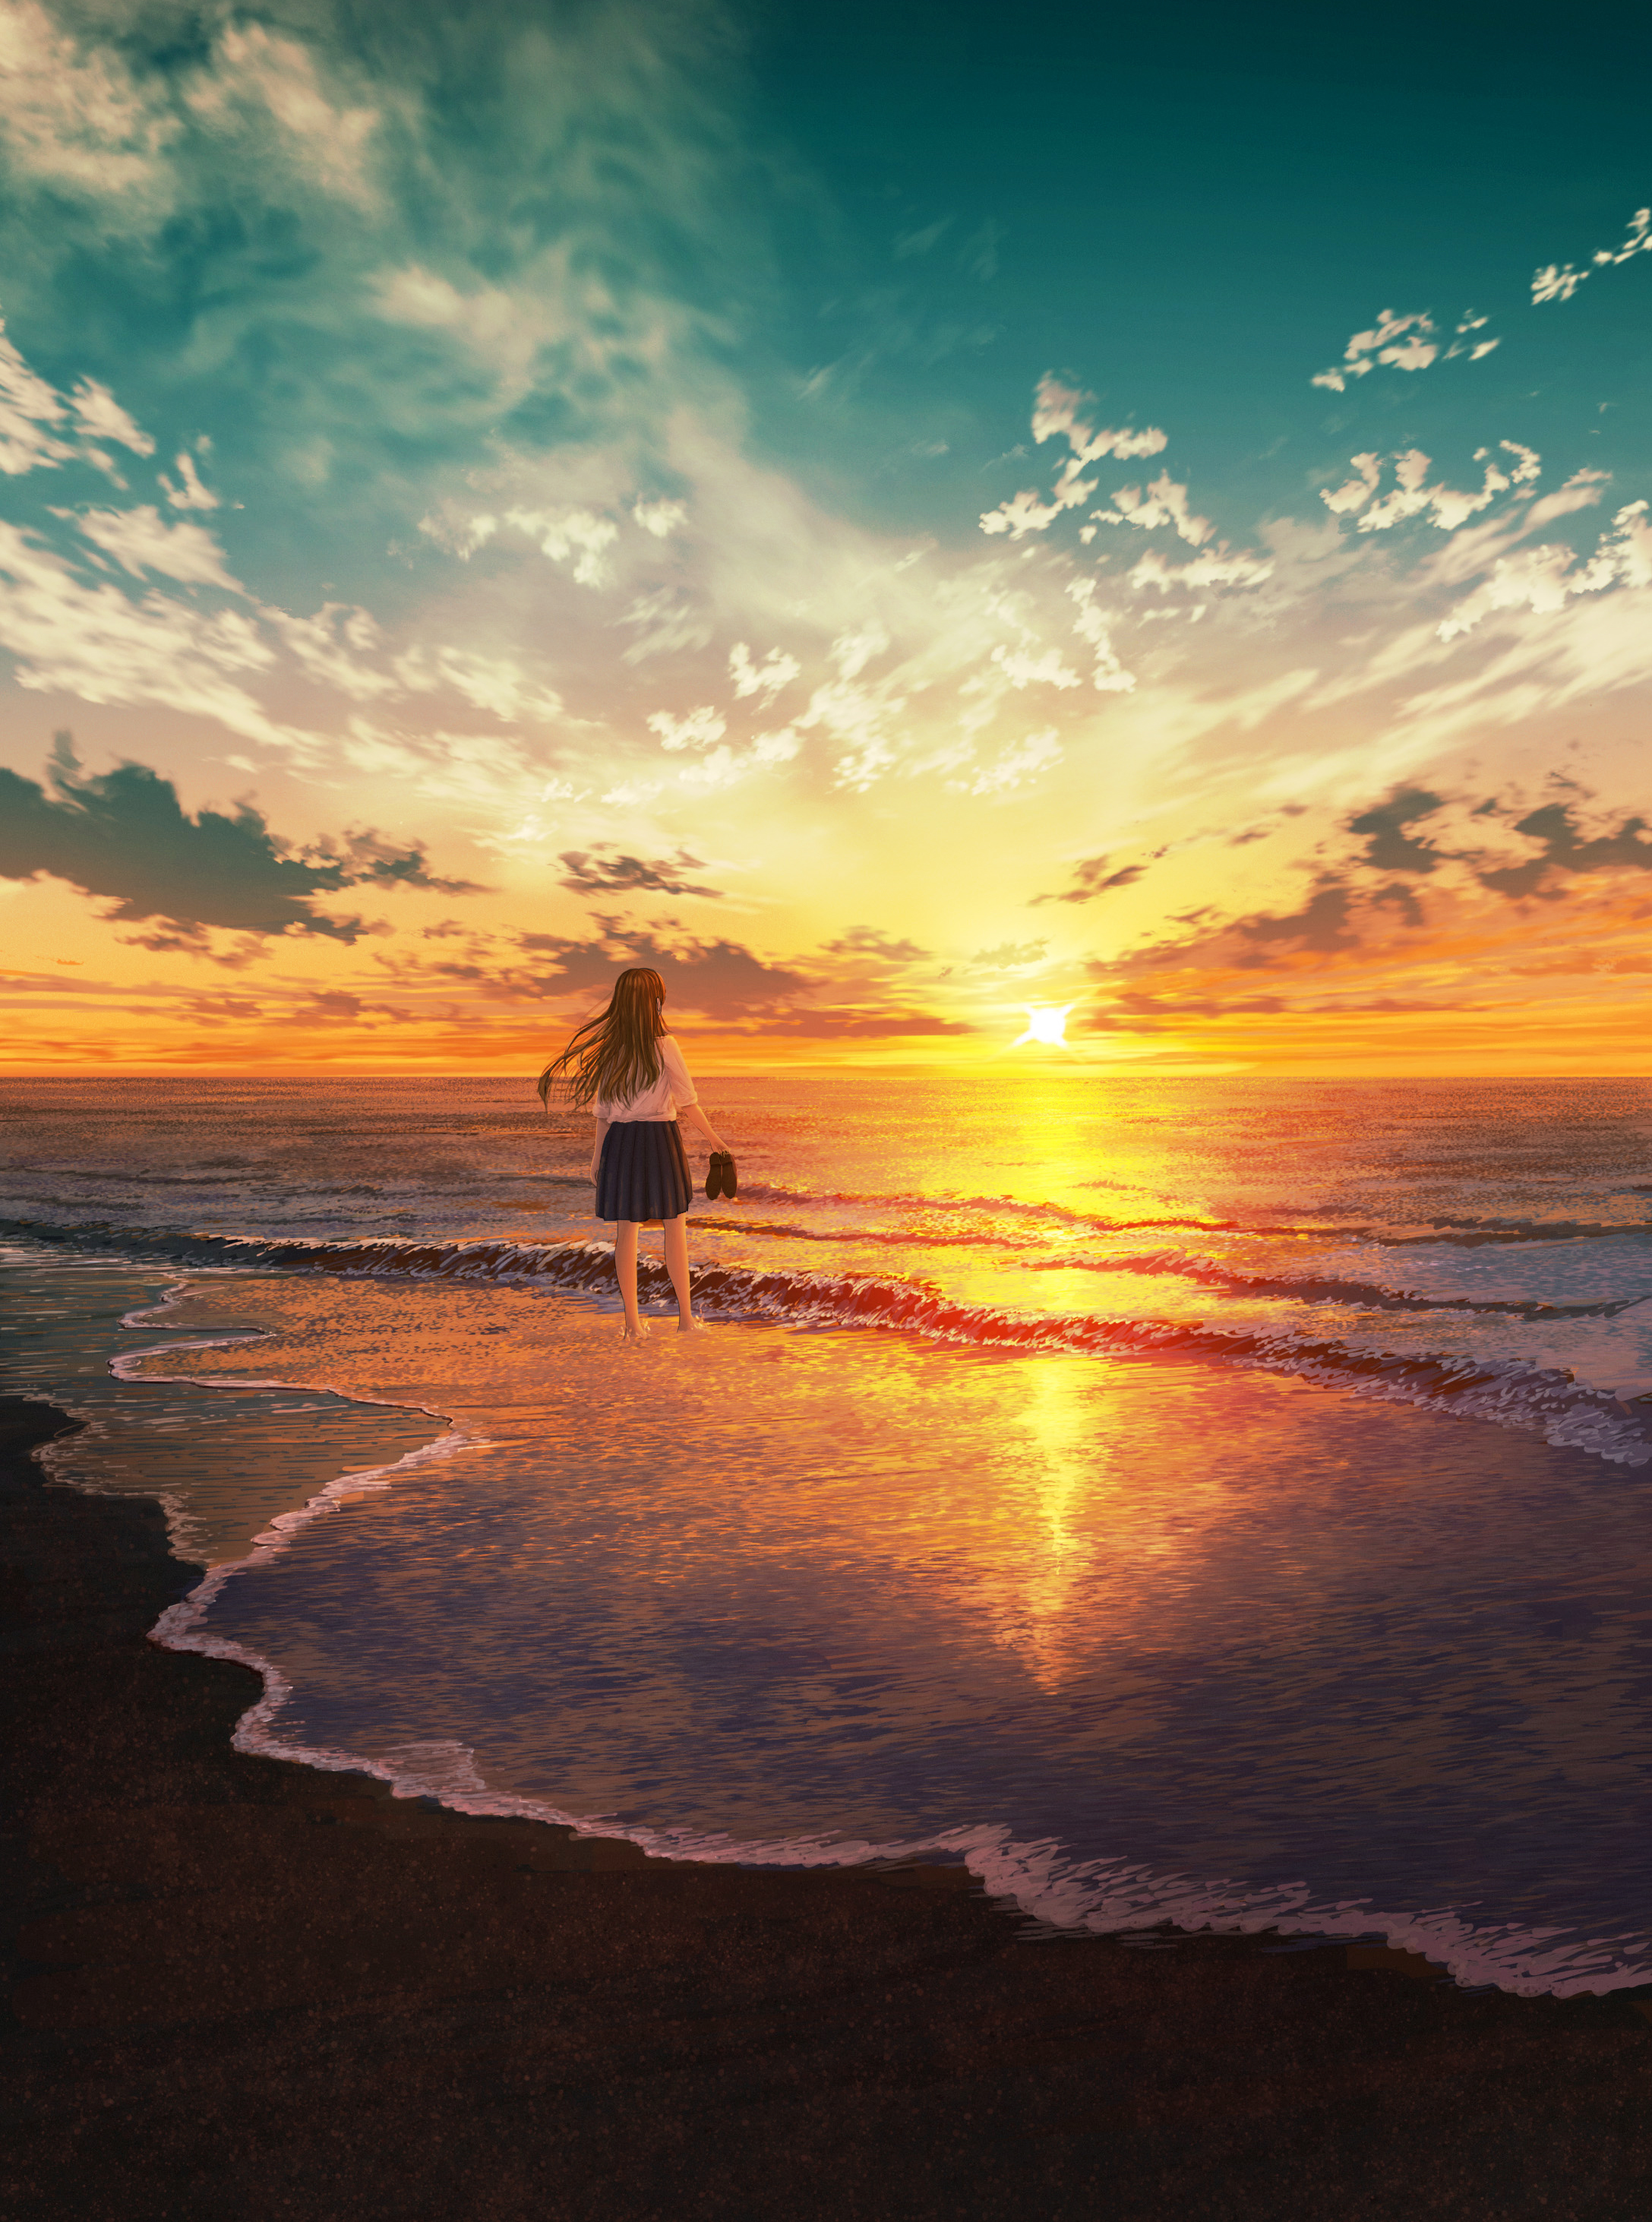 Фото Девочка в юбке и блузке, с туфлями в руках, стоит в морской воде на фоне заката